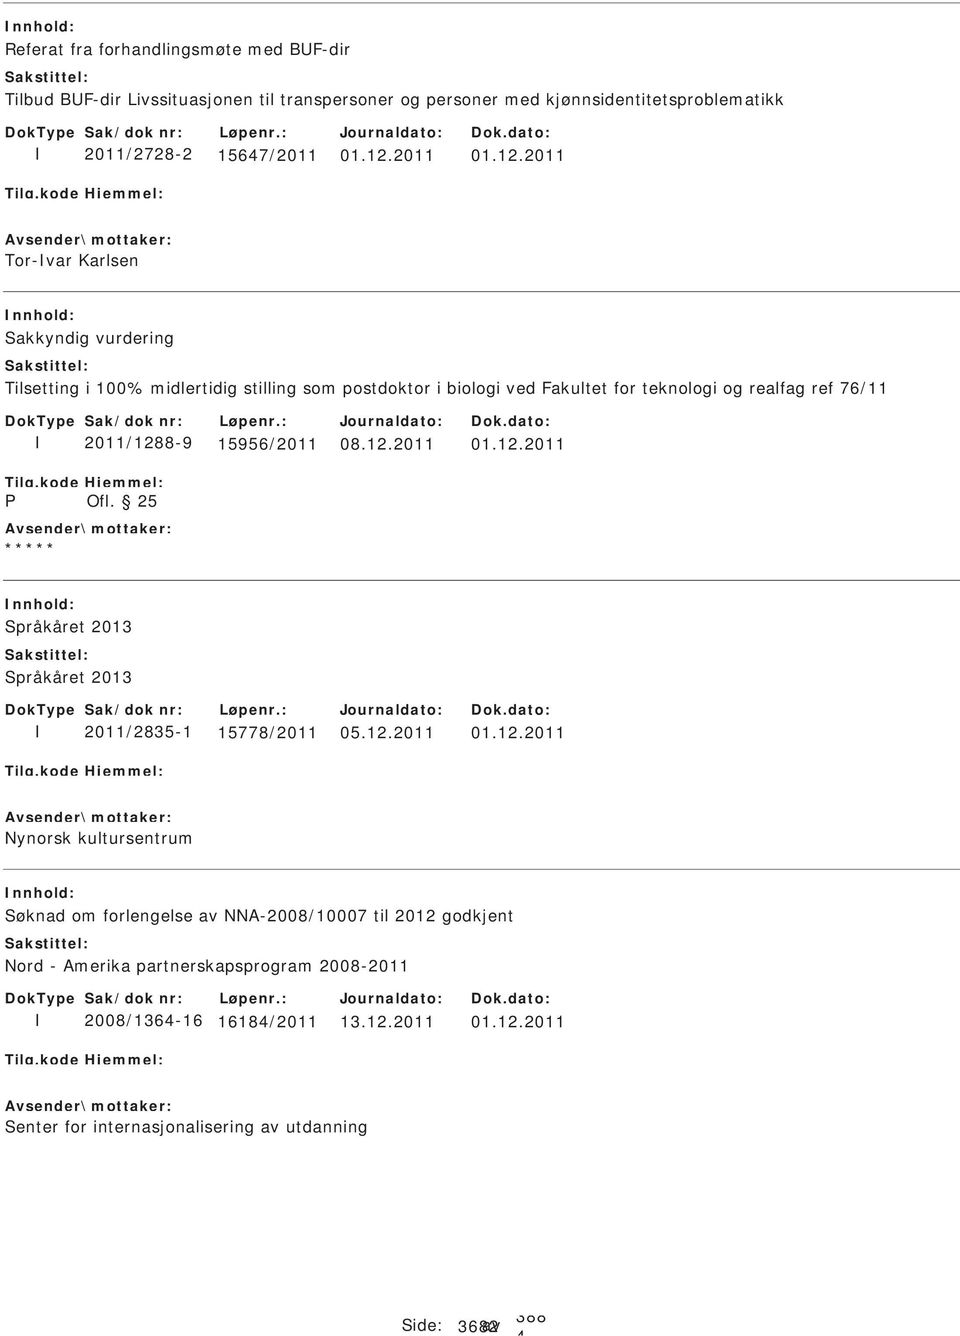 2011 Tor-var Karlsen akkyndig vurdering Tilsetting i 100% midlertidig stilling som postdoktor i biologi ved Fakultet for teknologi og realfag ref 76/11 P 2011/1288-9